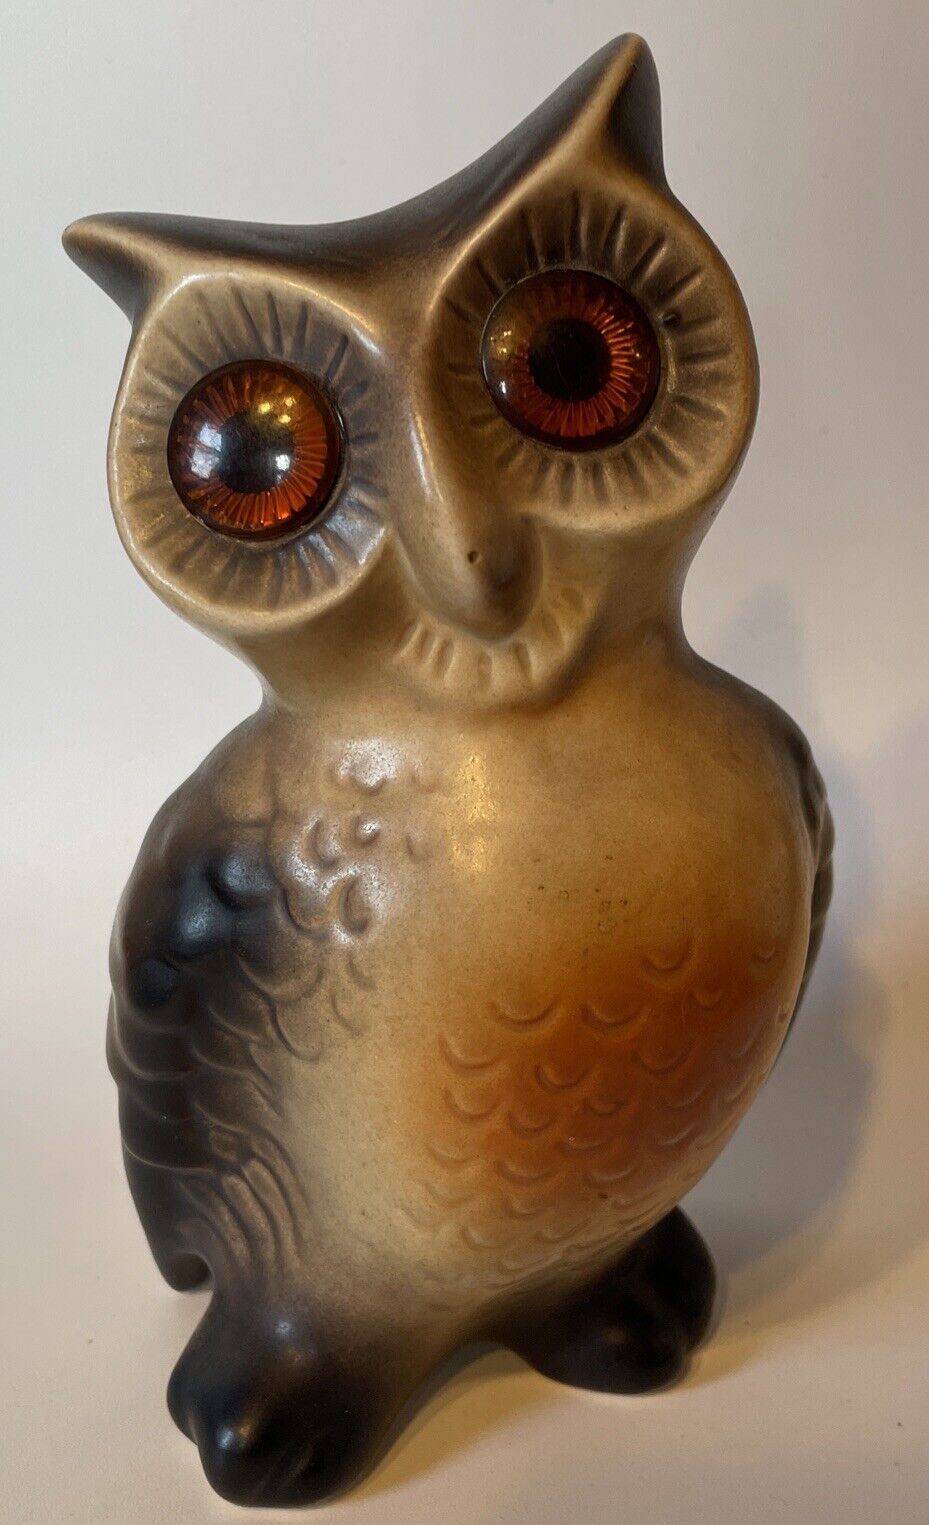 Vintage Ceramic Owl Figurine 7” Tall